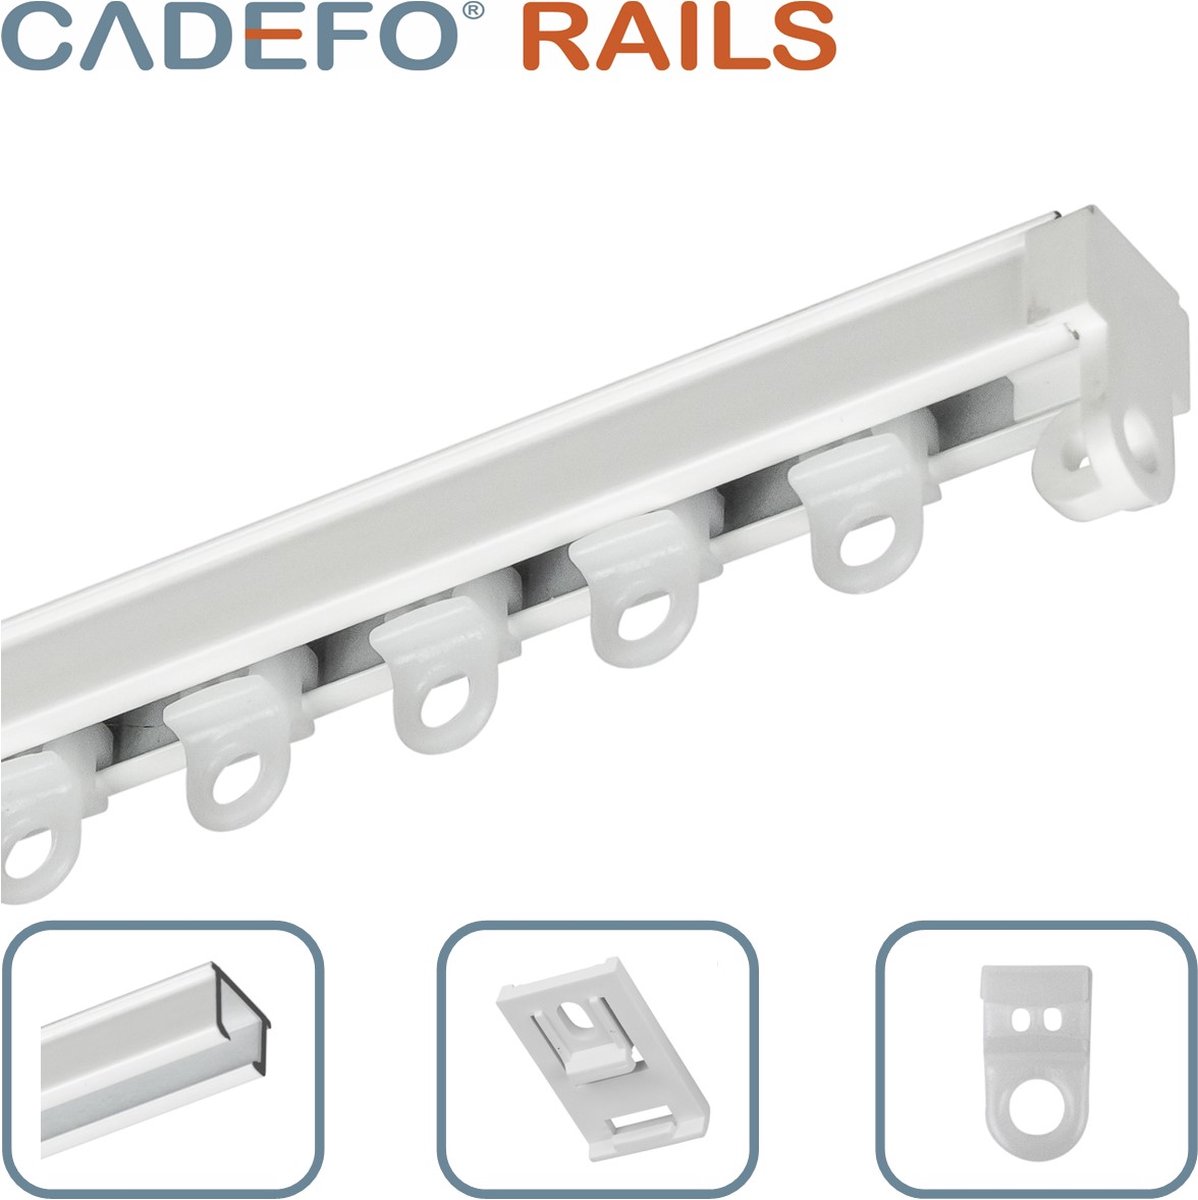 CADEFO RAILS (151 - 200 cm) Gordijnrails - Compleet op maat! - UIT 1 STUK - Leverbaar tot 6 meter - Plafondbevestiging - Lengte 178 cm